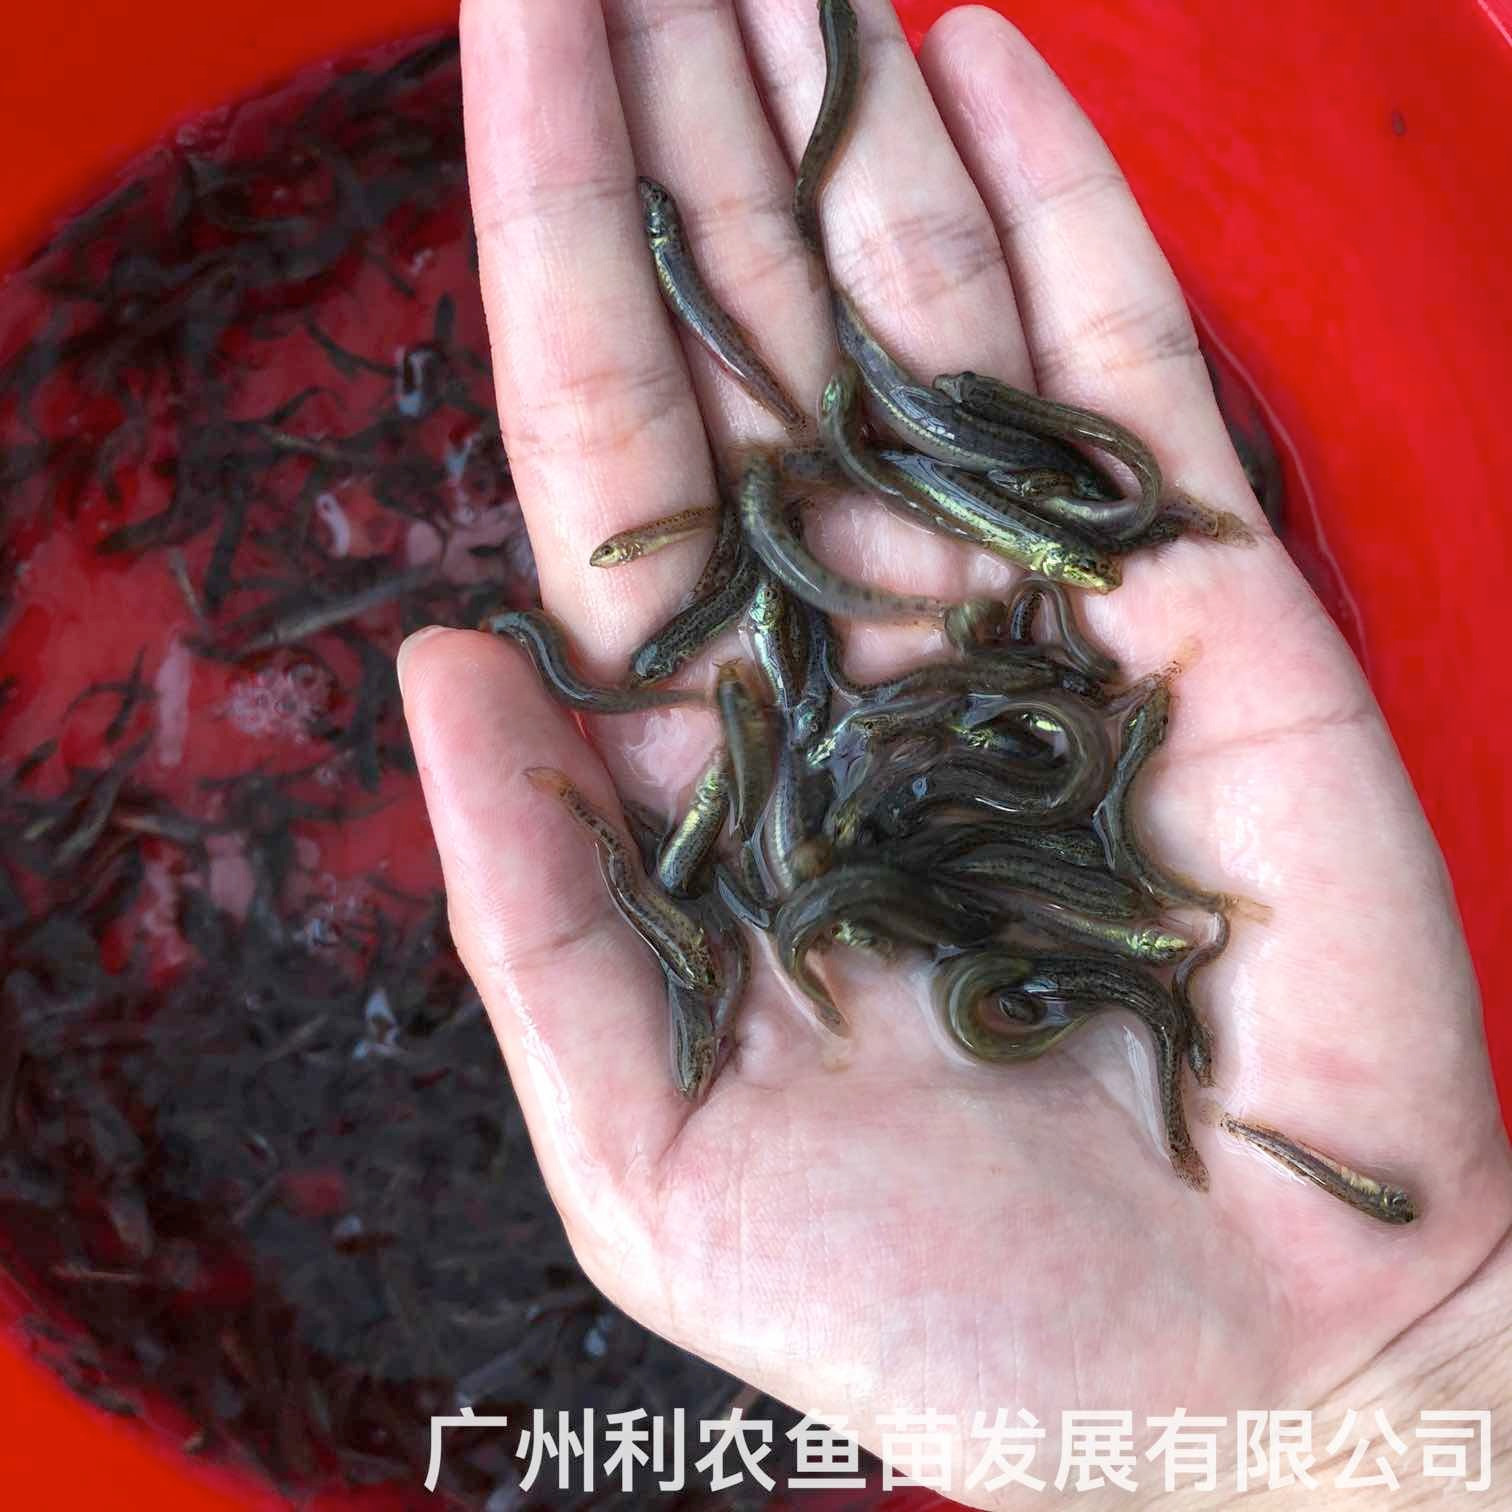 广东惠州台湾泥鳅苗出售广东河源泥鳅鱼苗批发